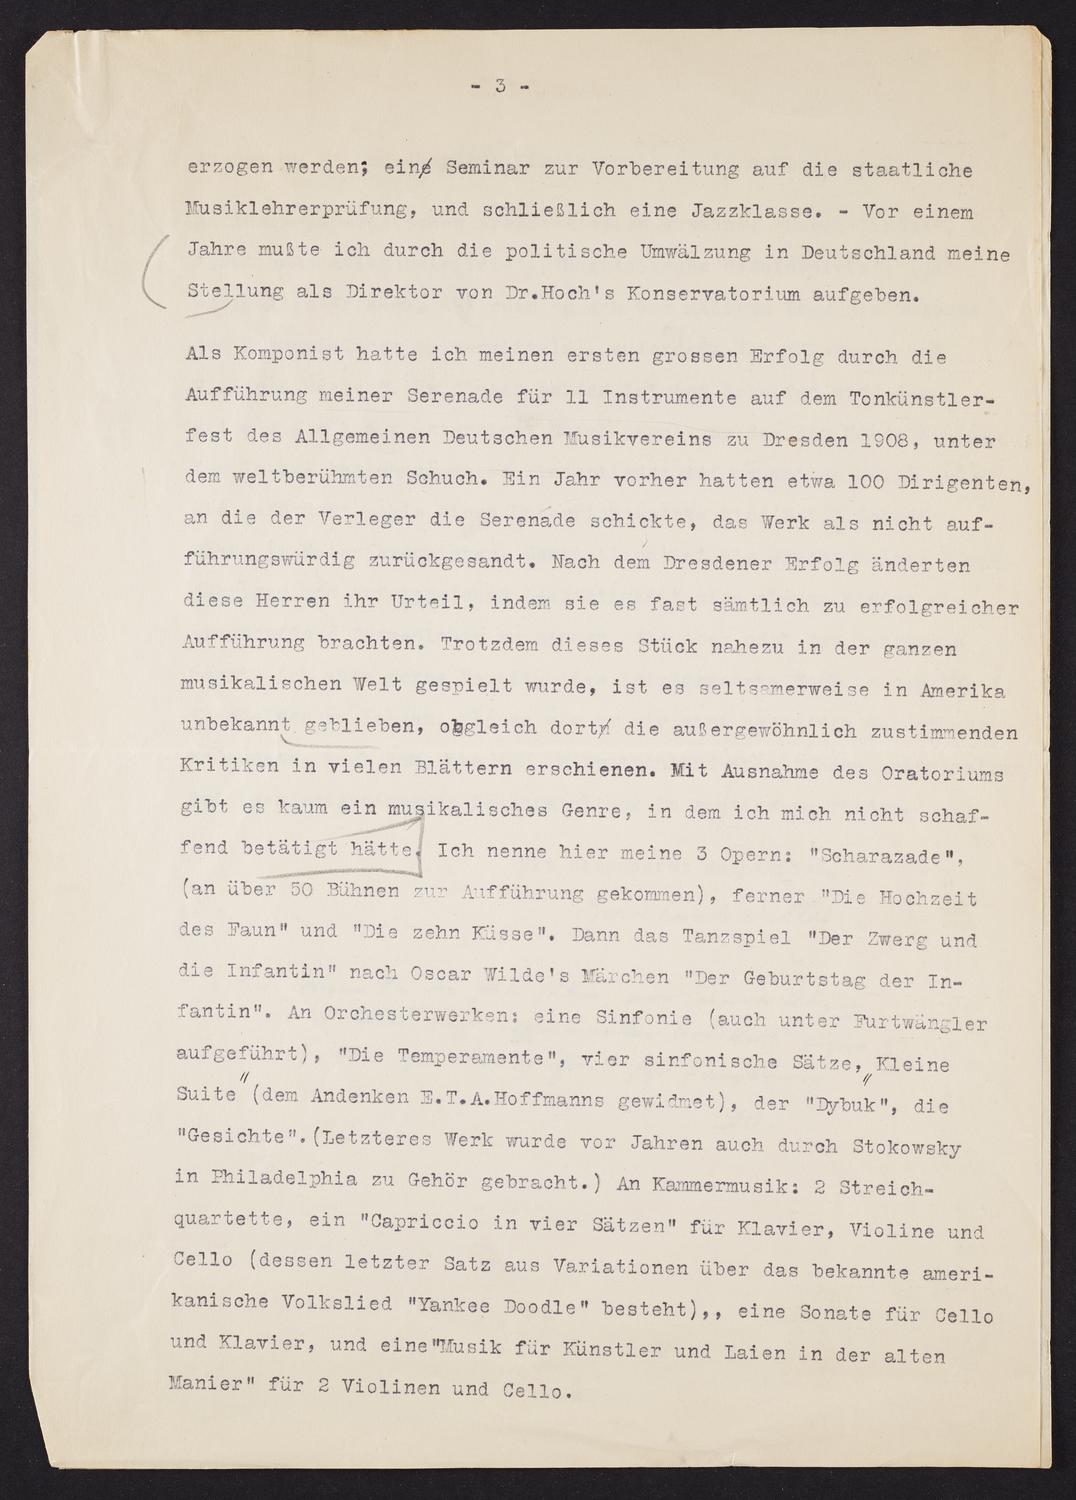 Correspondence from Bernhard Sekles to David Ewen, page 3 of 4